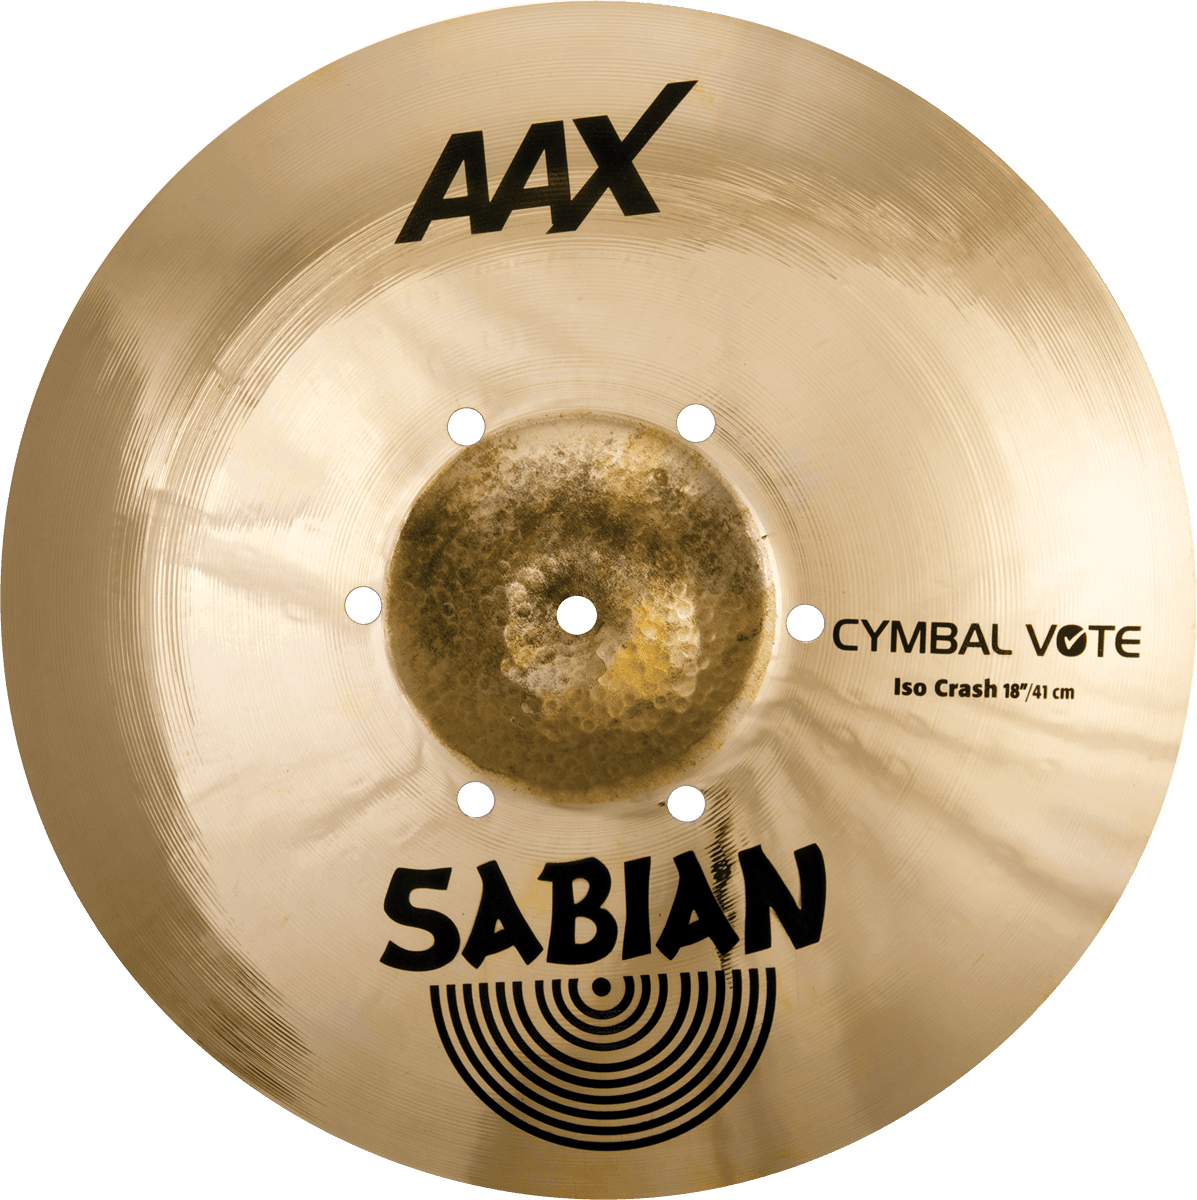 Sabian Aax   Cymbale Vote Iso Crash 18 - 18 Pouces - Platillos crash - Main picture